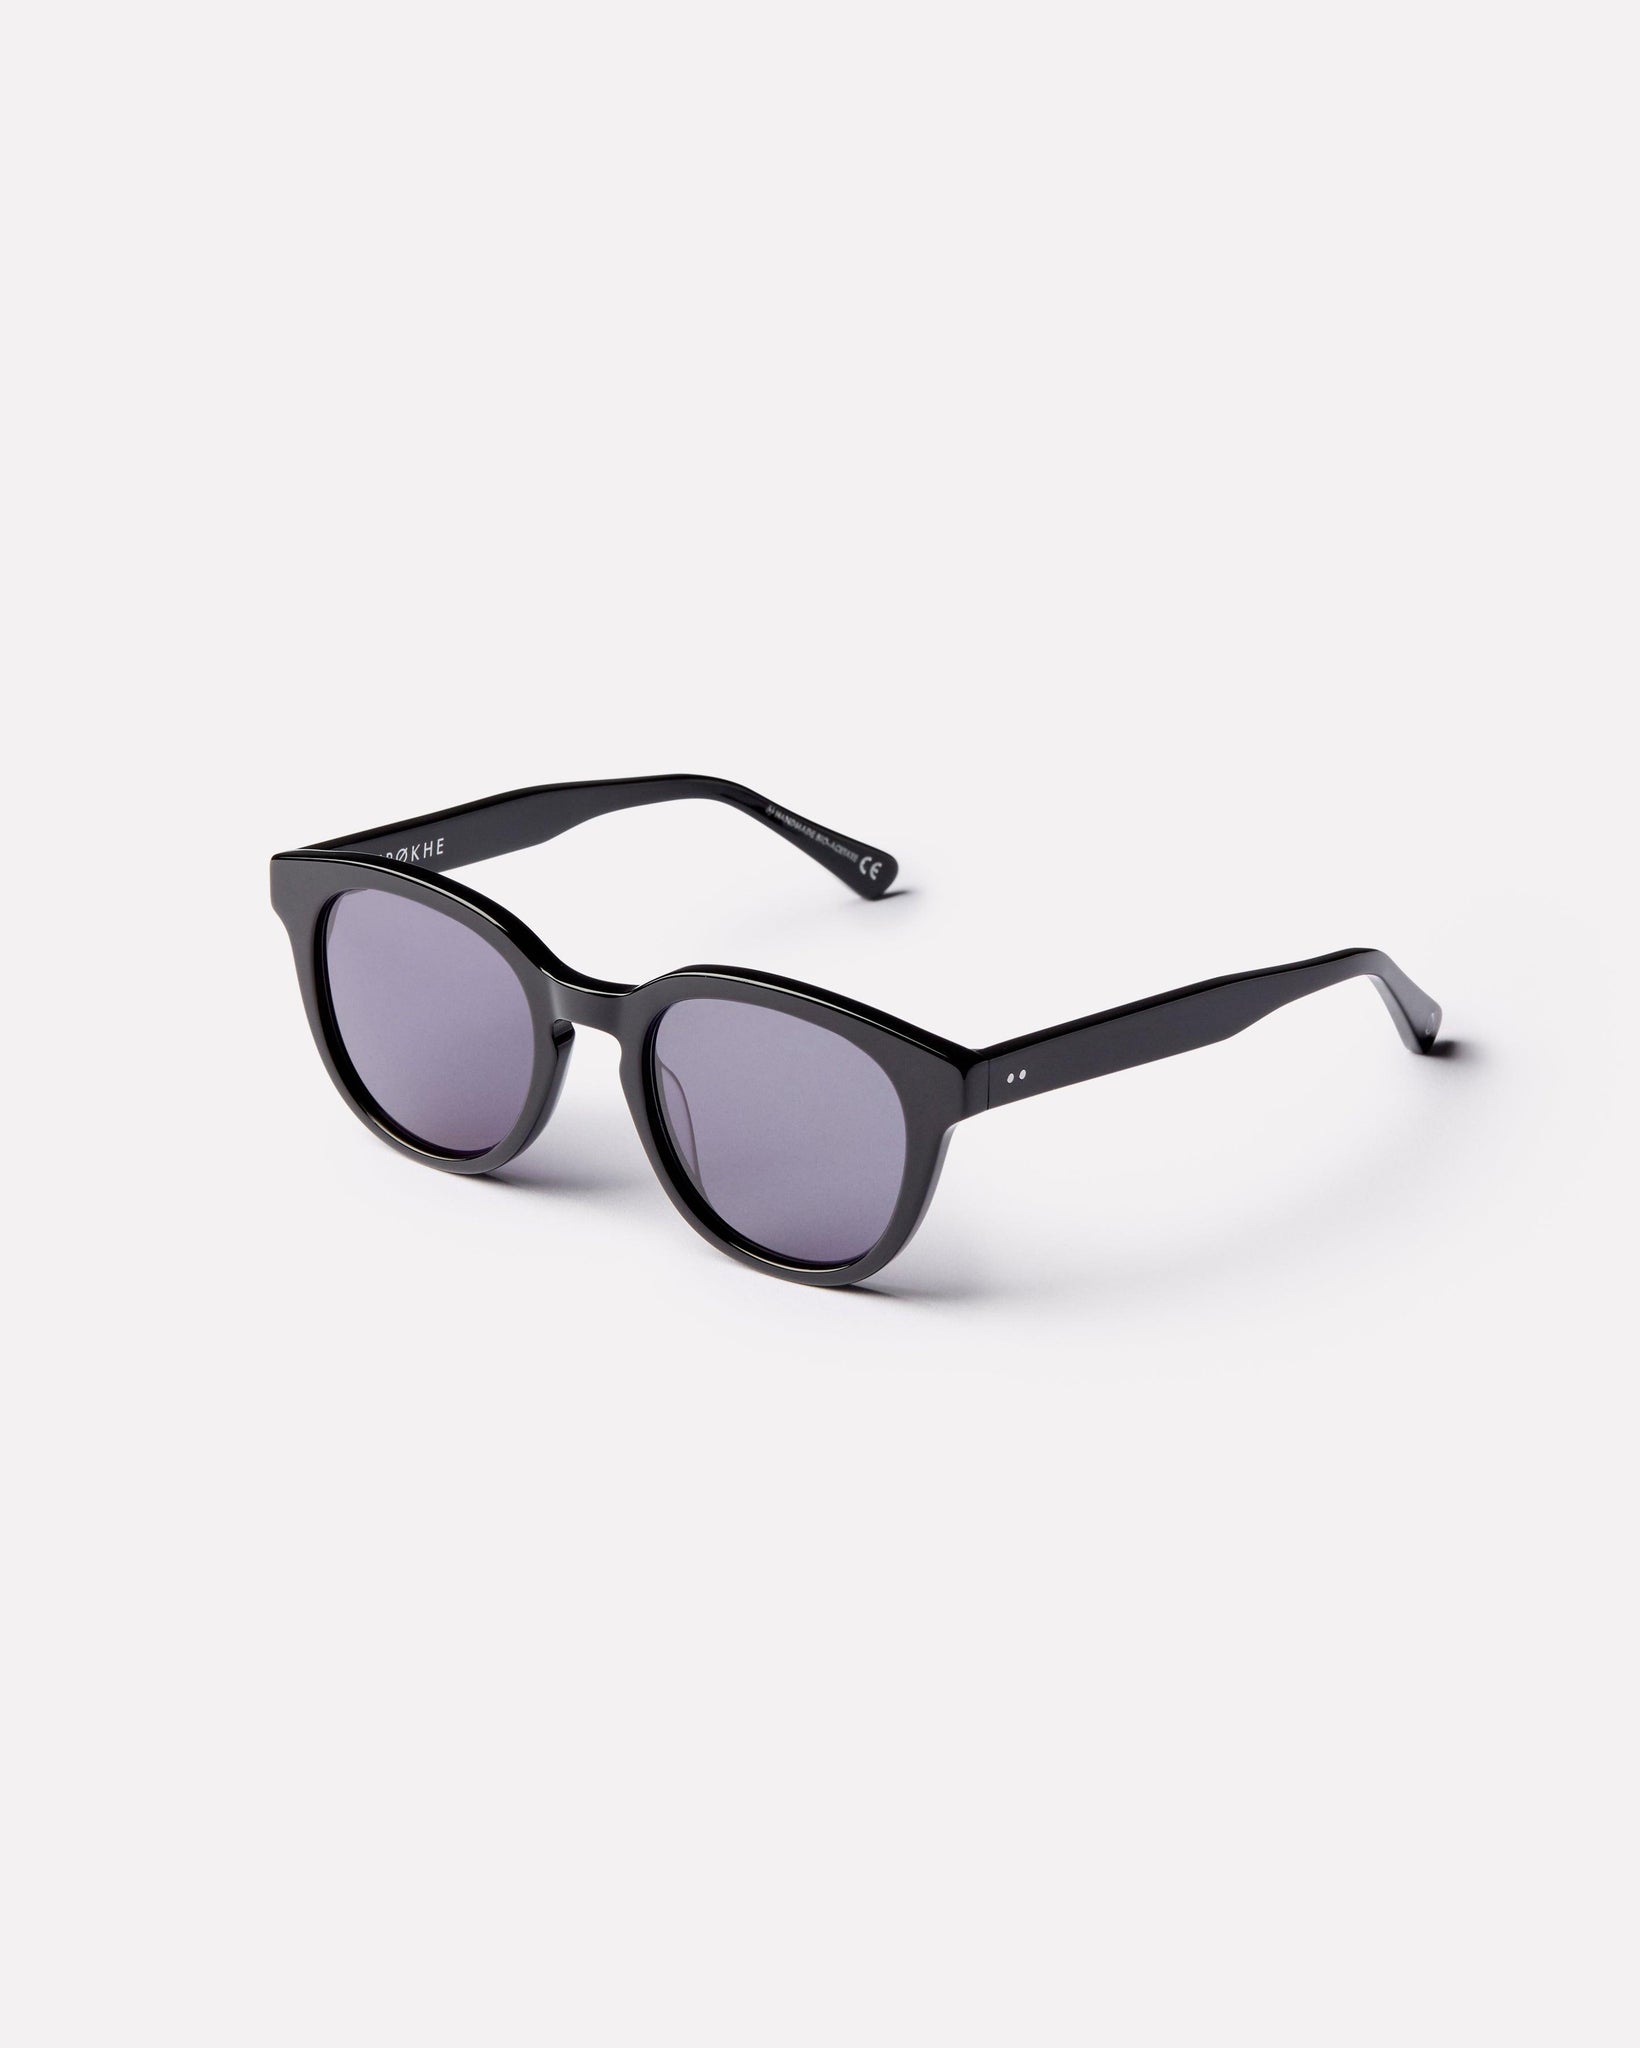 Anteka 2.0 - Black Polished / Black - Sunglasses - EPOKHE EYEWEAR